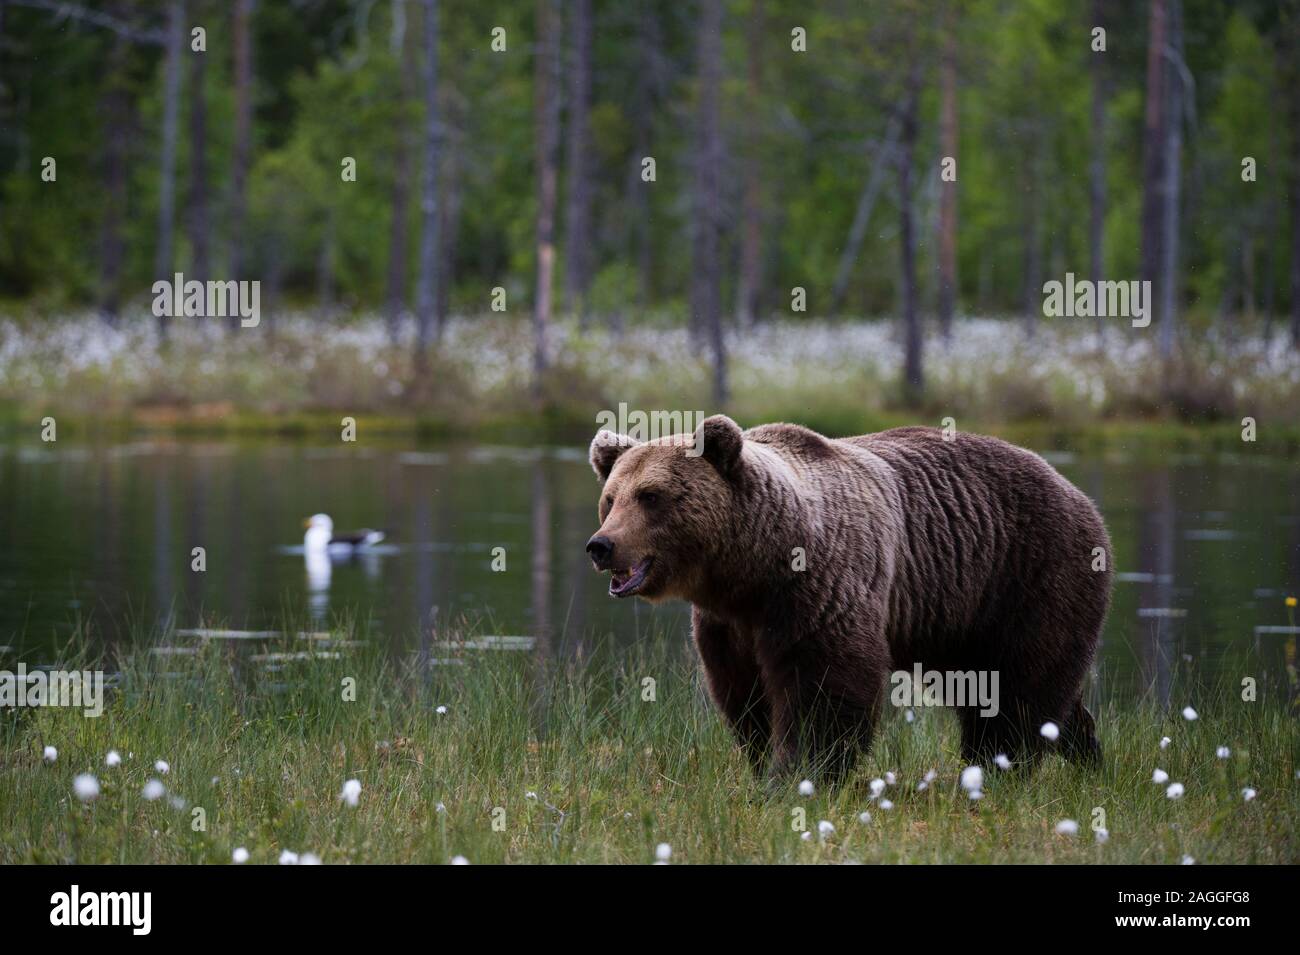 European brown bear (Ursus arctos) walking along lake shore, Kuhmo, Finland Stock Photo